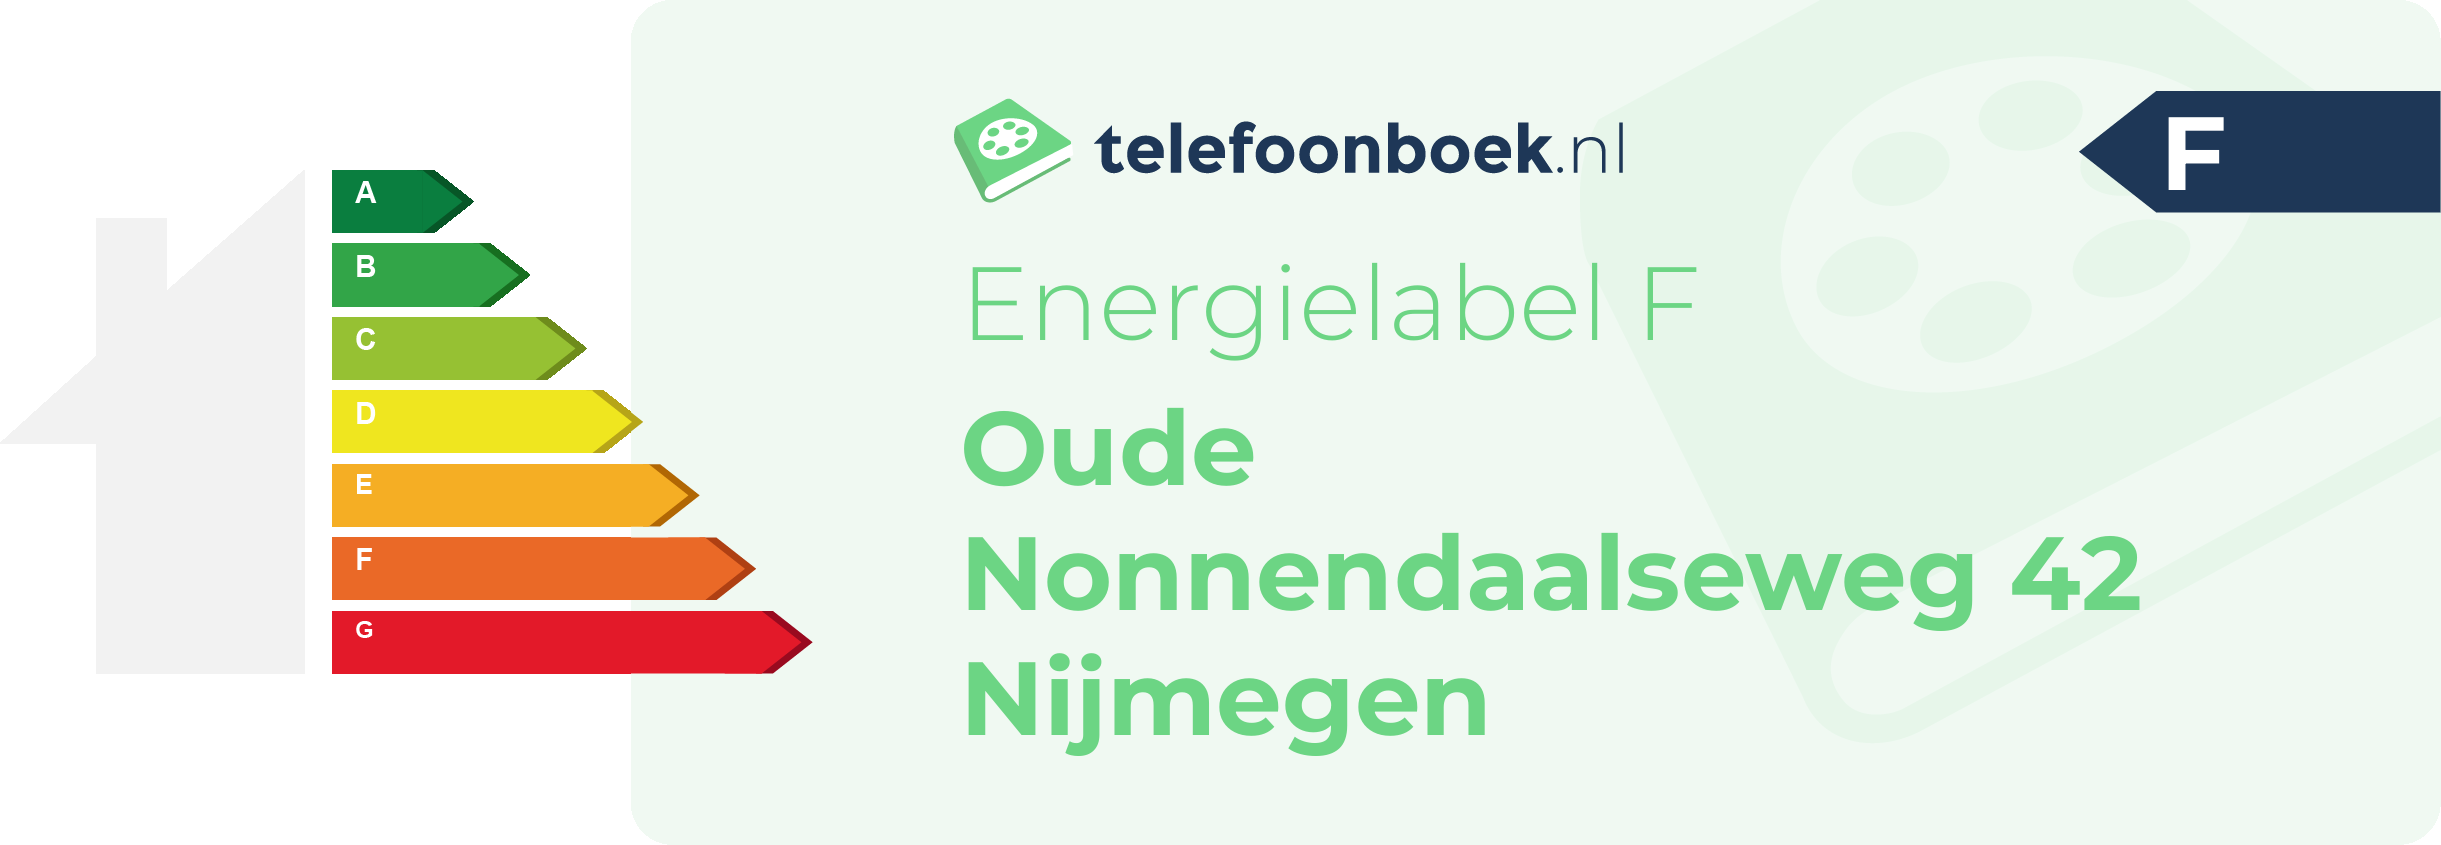 Energielabel Oude Nonnendaalseweg 42 Nijmegen